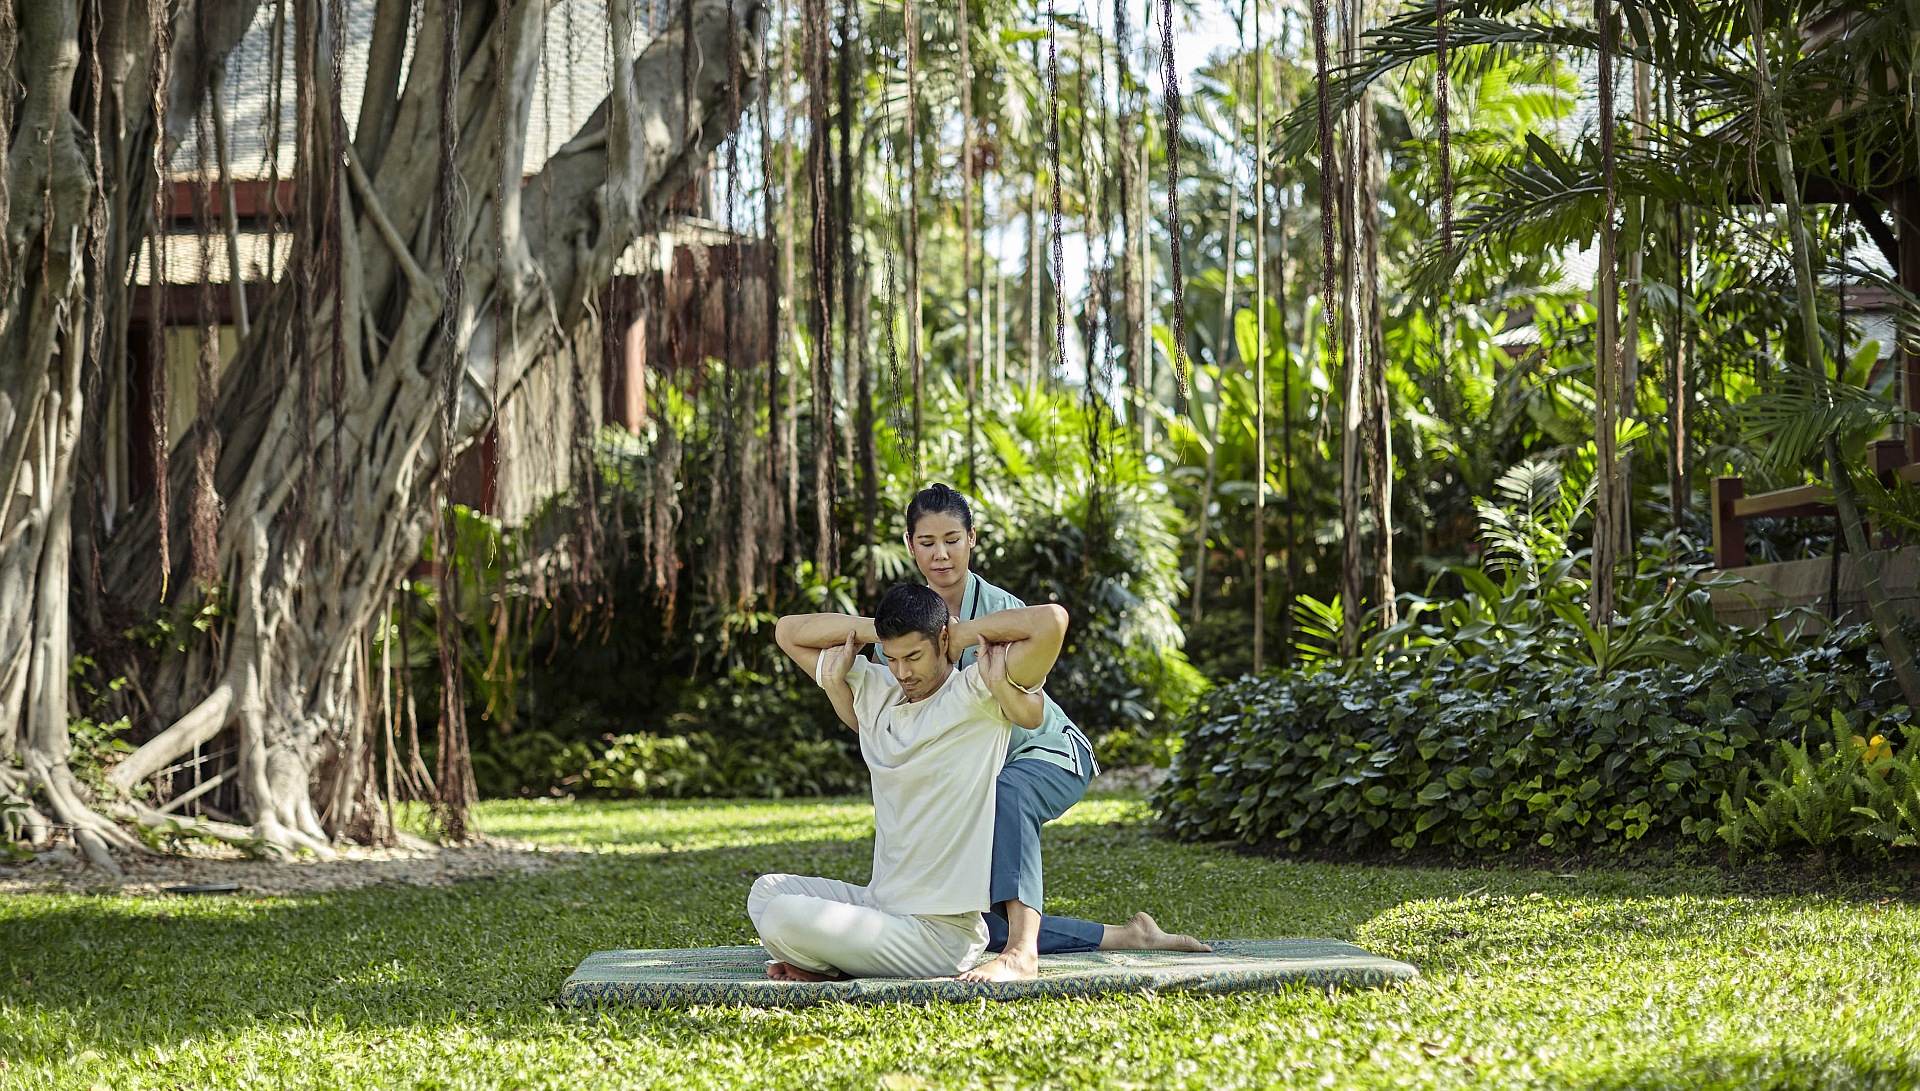 Chiva-Som -Thai Massage in the garden